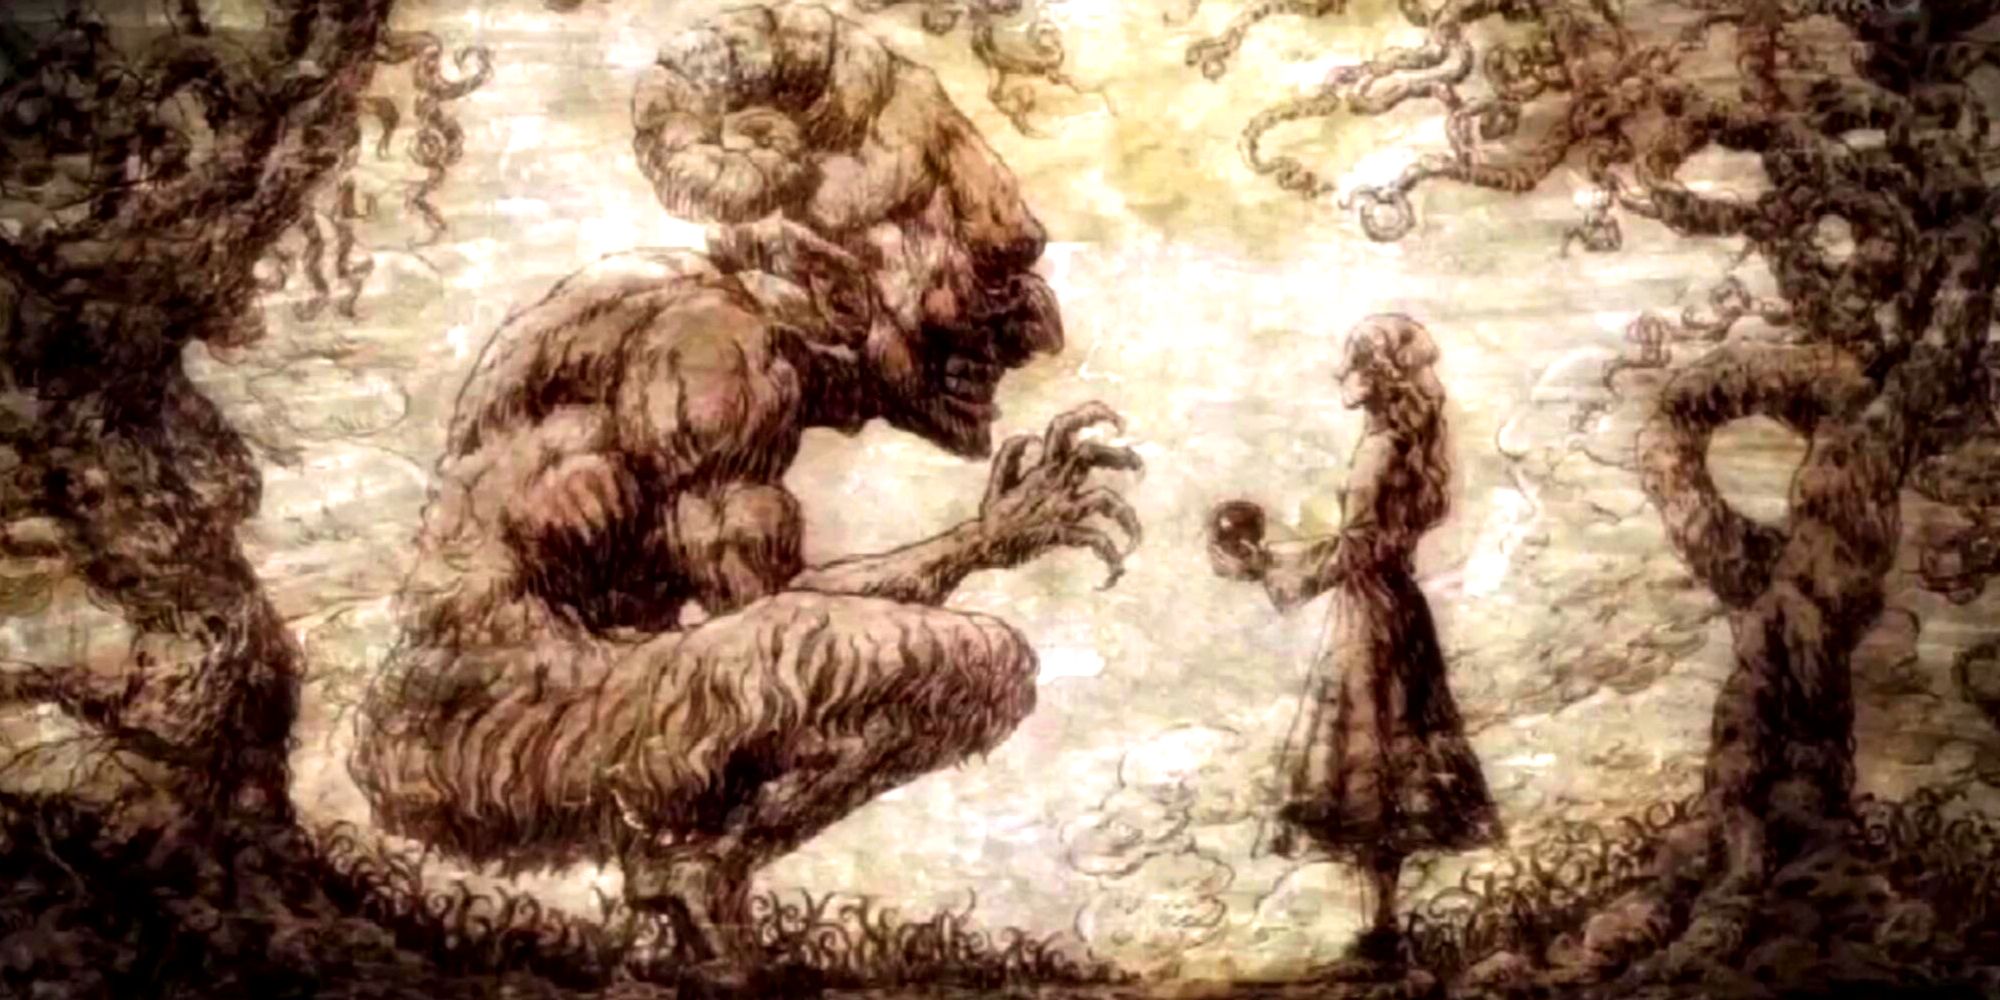 Anime Attack On Titan Ymir Founding Titan Lore